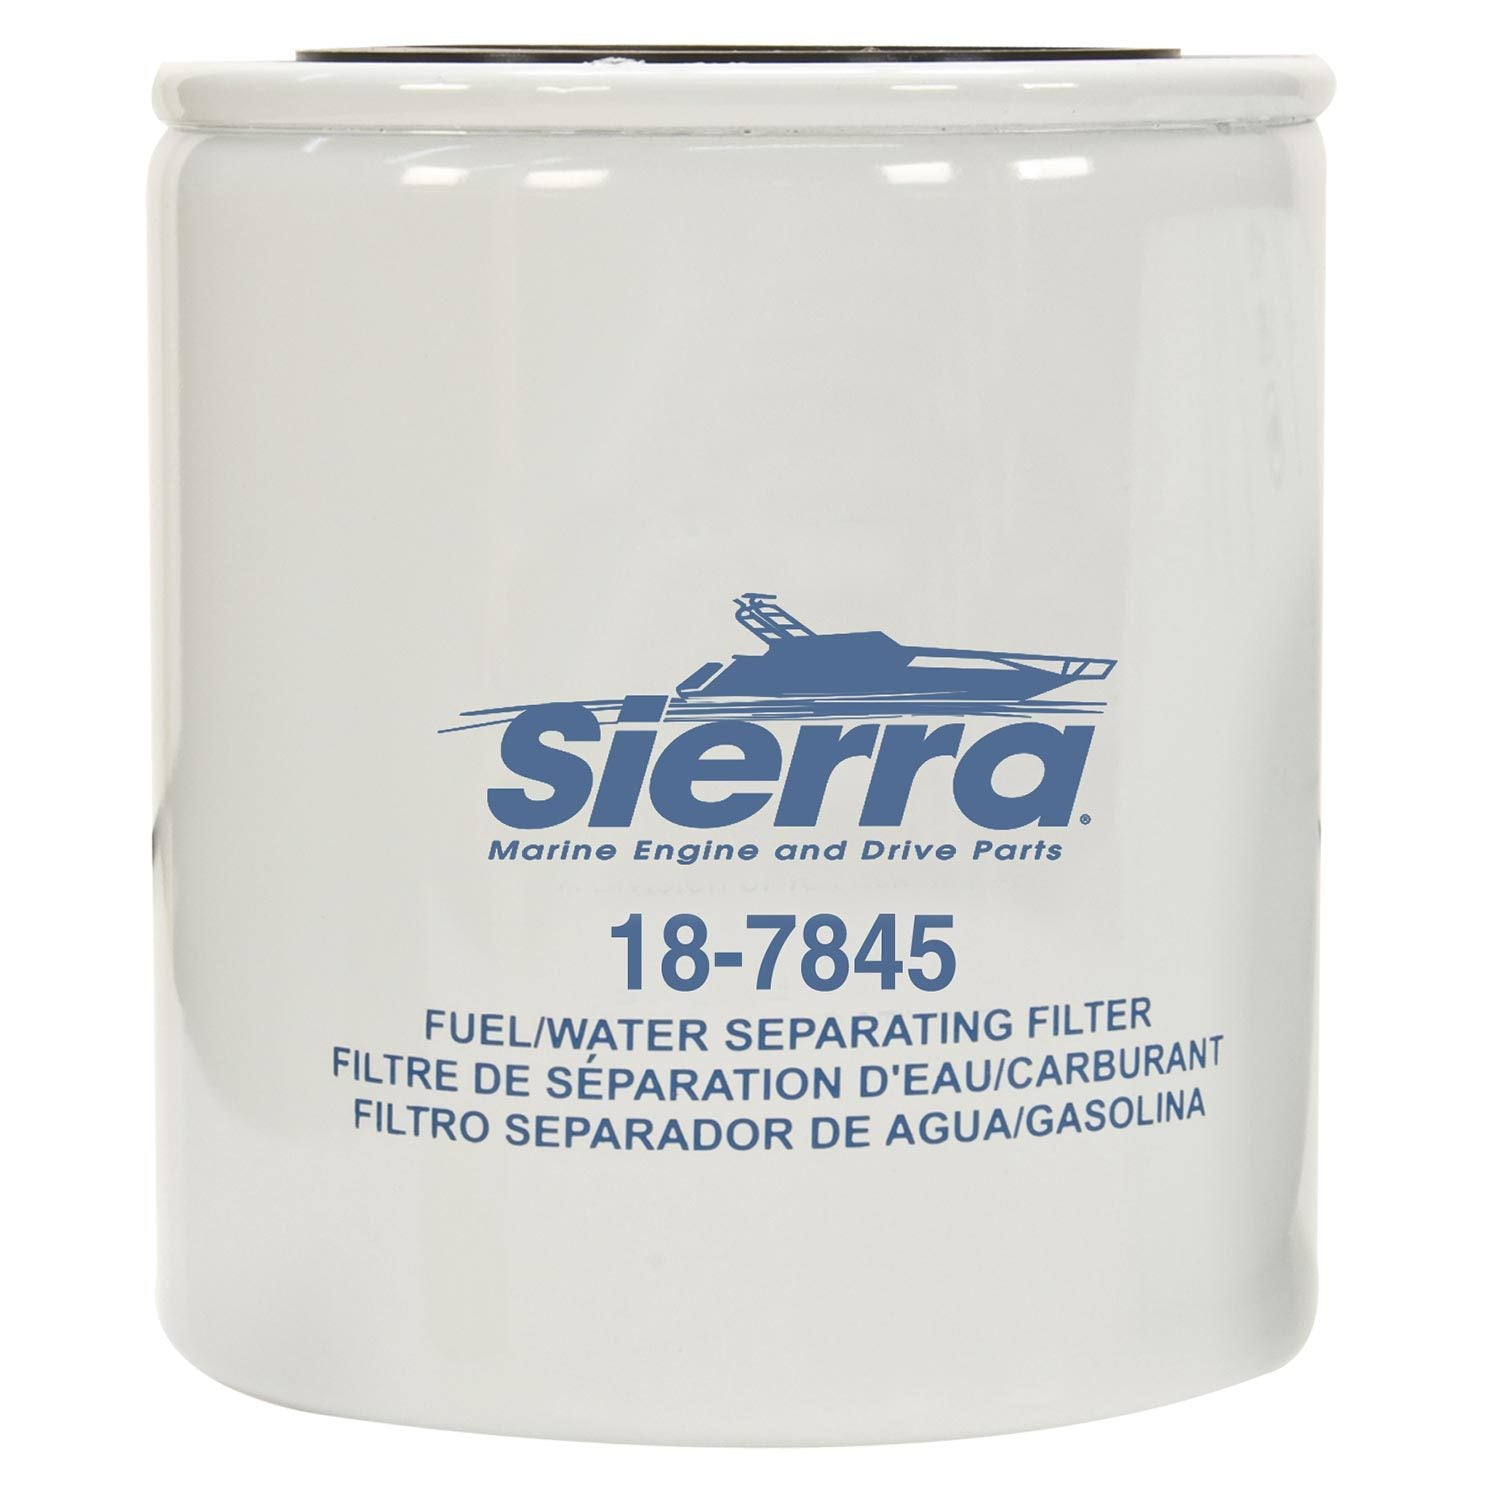 Sierra Fuel/Water Separating Filter